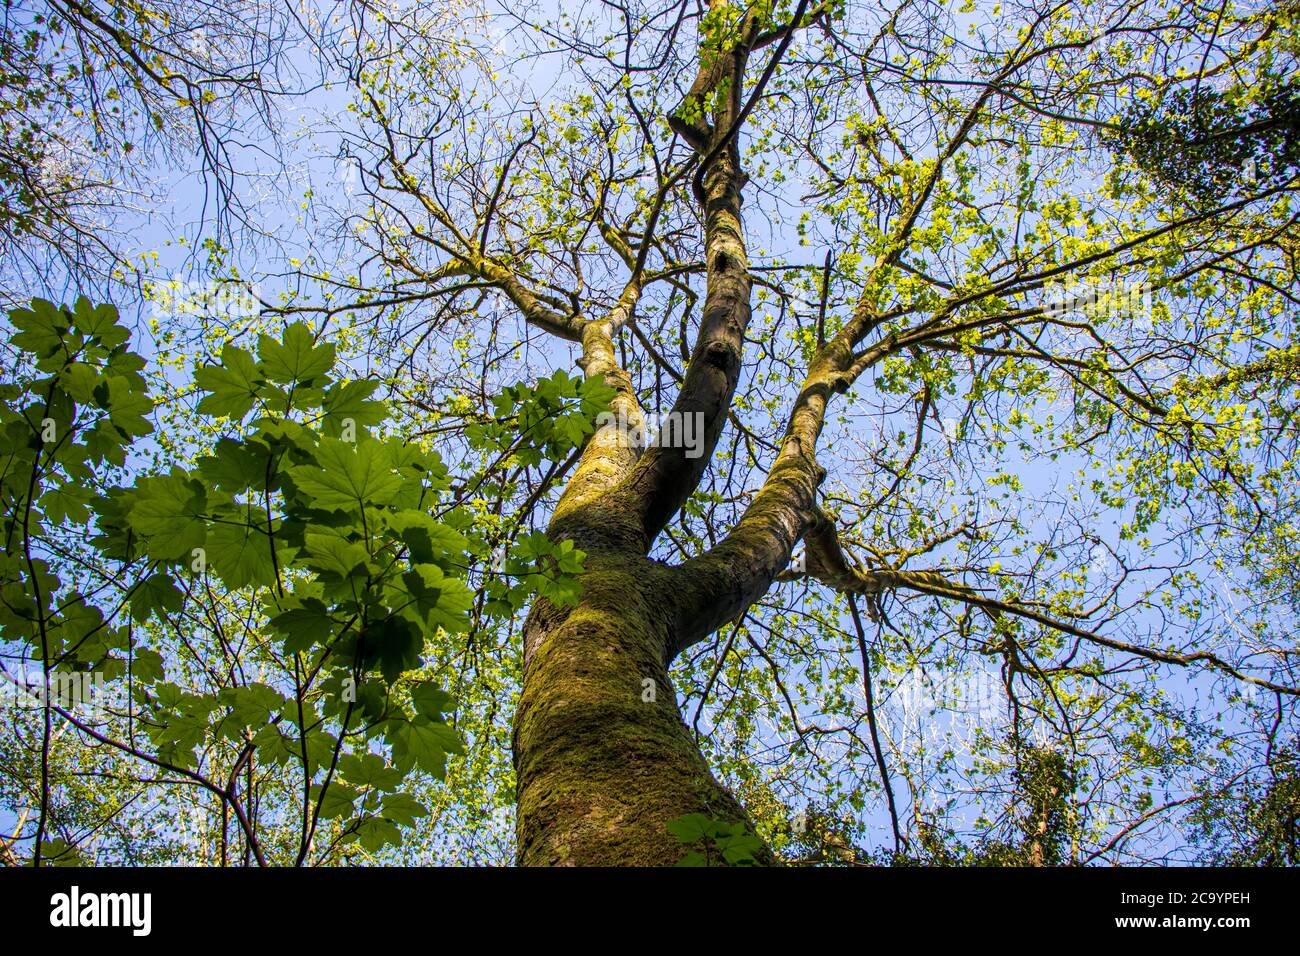 Réserve naturelle de Wrens Nest Dudley-UN arbre avec une jeune feuille verte Banque D'Images